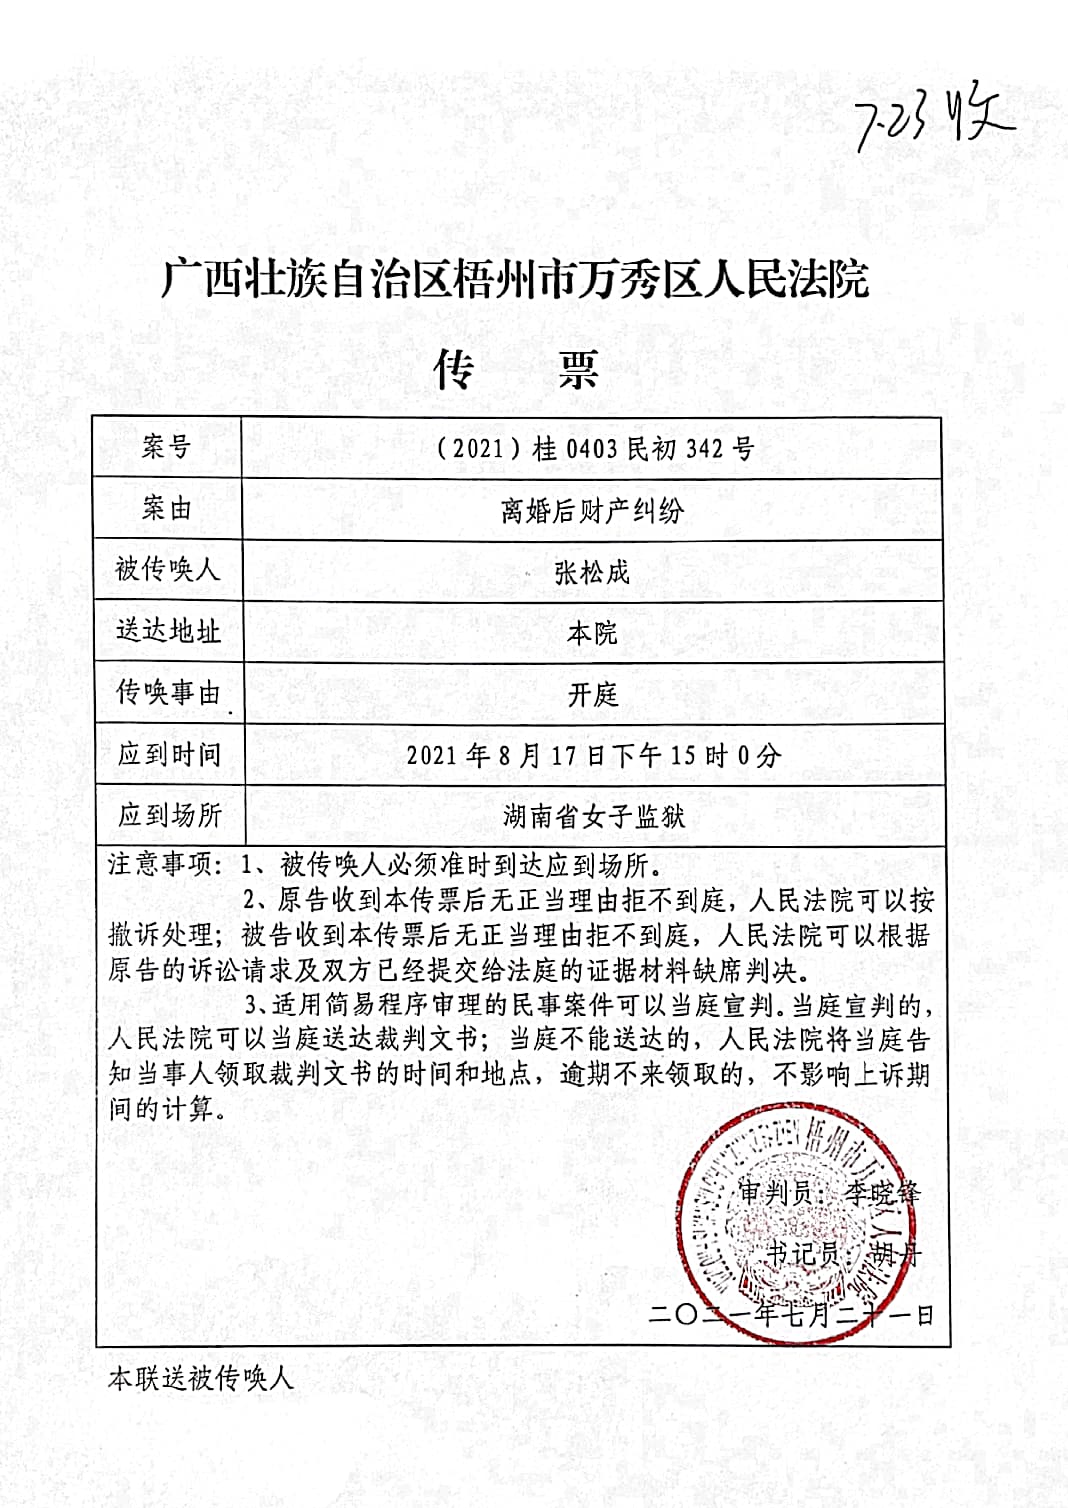 传票显示,这起再审案件将于8月17日在湖南省女子监狱开庭.